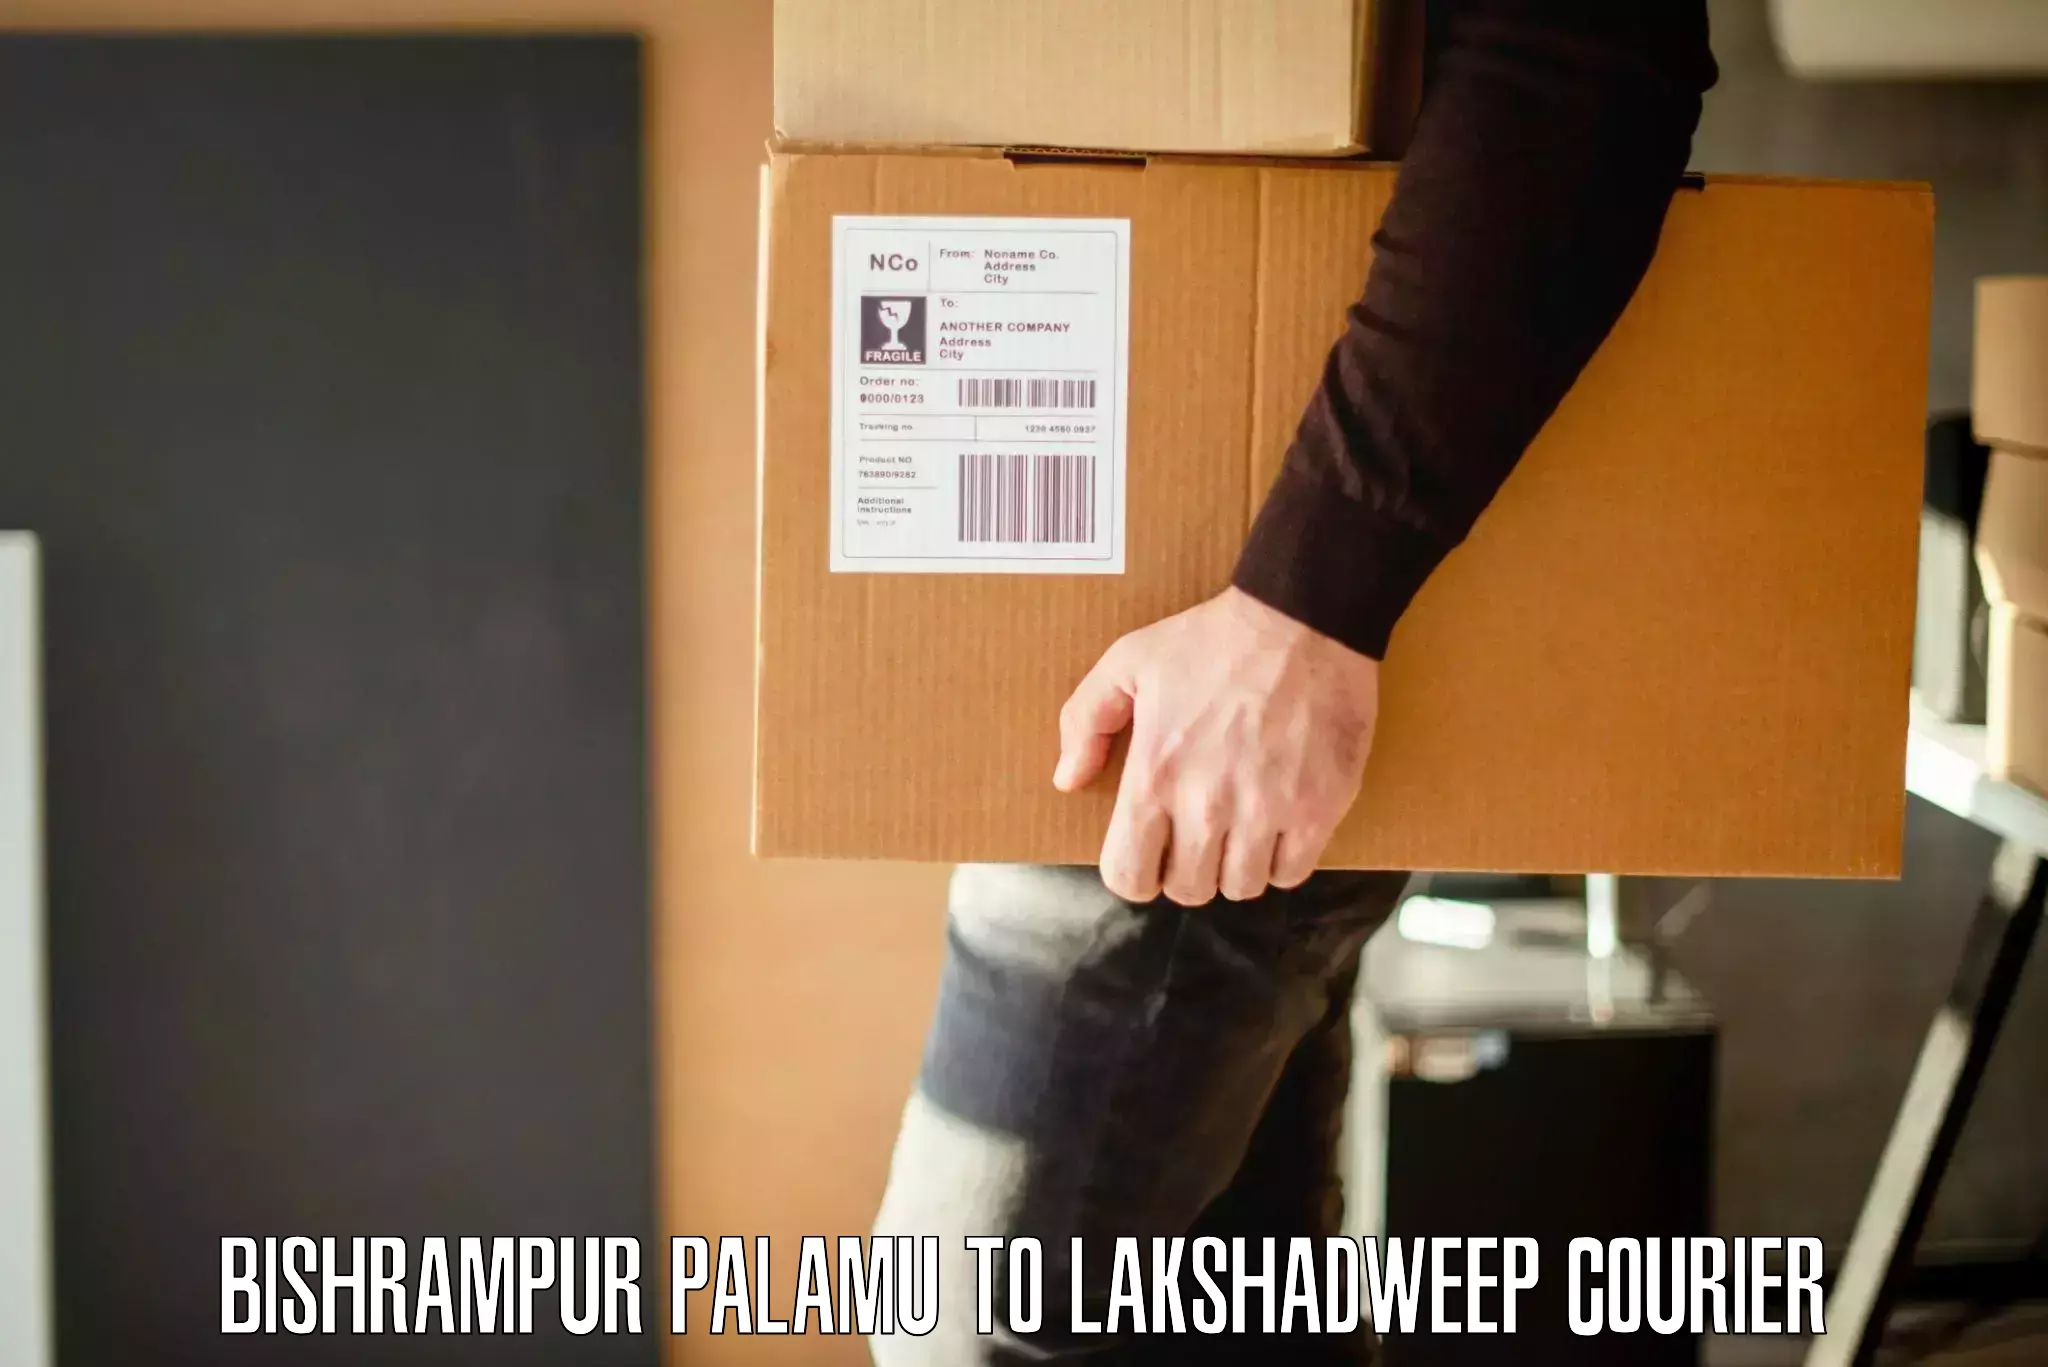 Furniture transport company Bishrampur Palamu to Lakshadweep